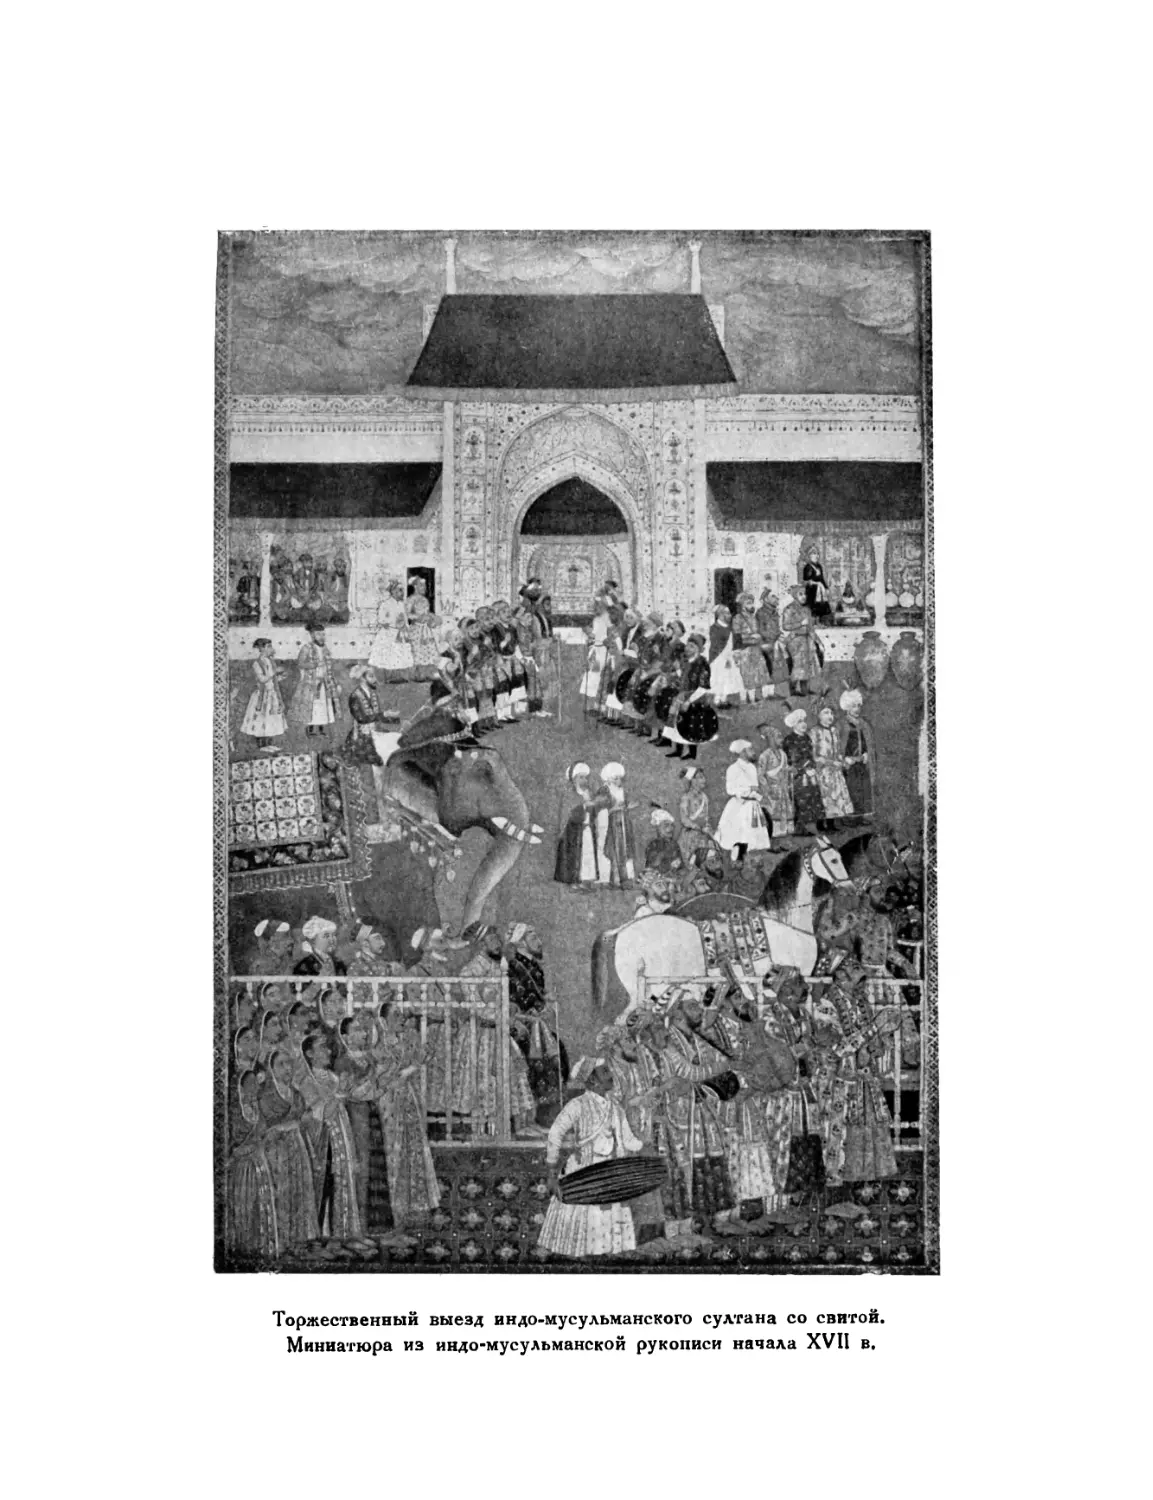 Вклейка. Торжественный выезд индо-мусульманс кого Султана со свитой. Миниатюра из индо-мусульманской рукописи начала XVII в.